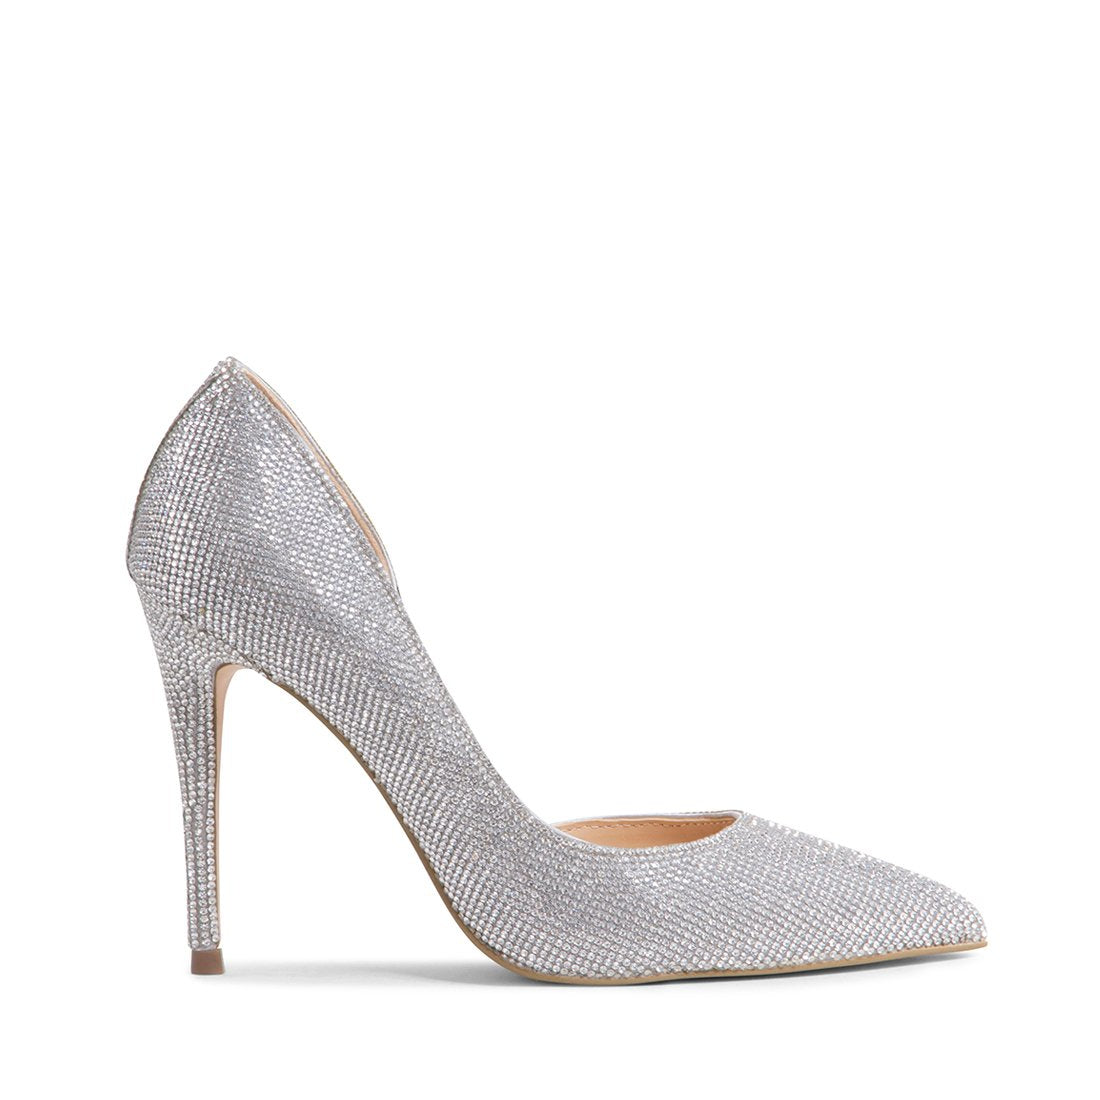 silver kitten heels canada